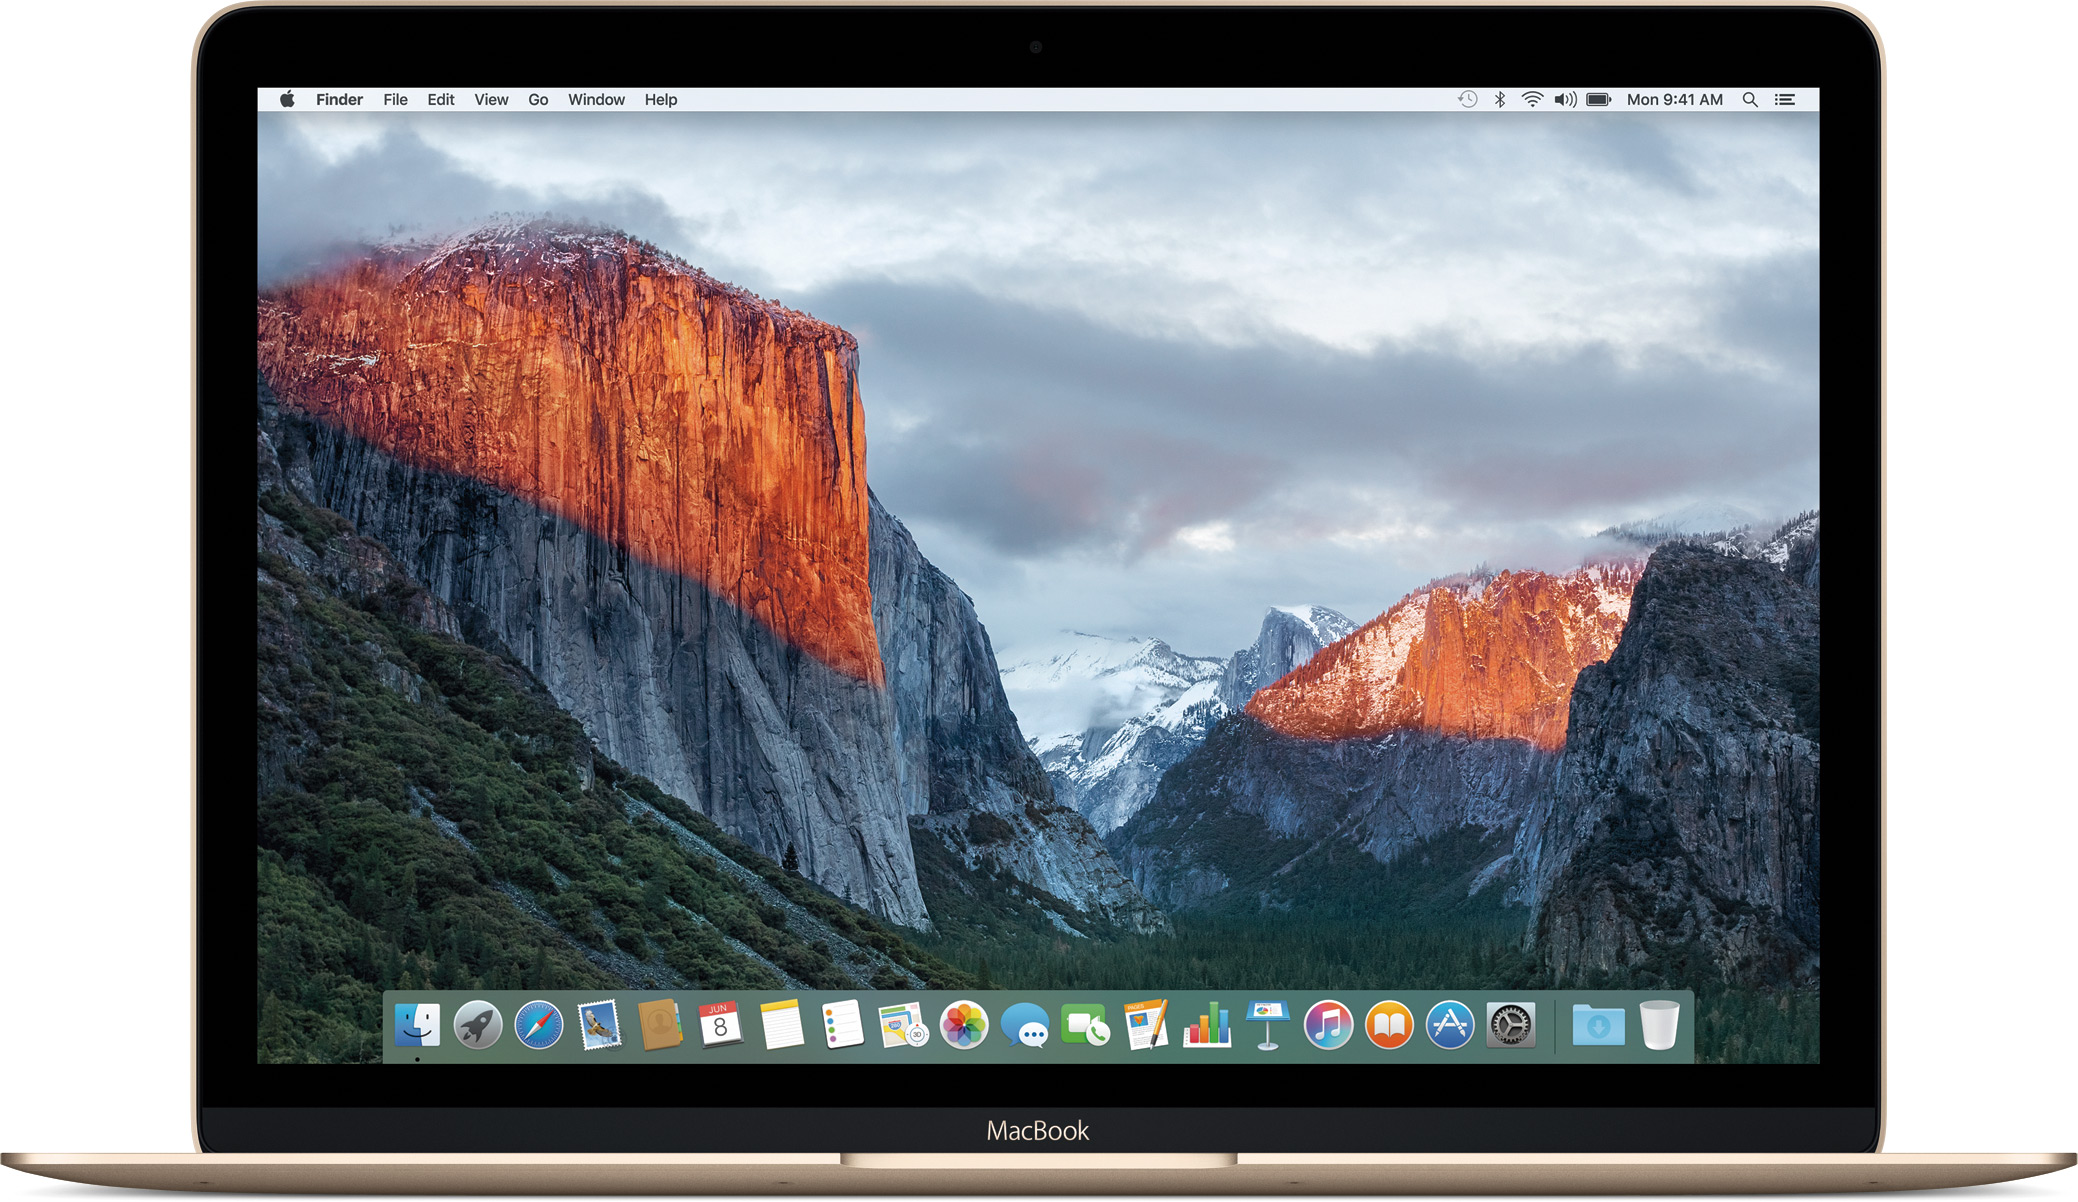 Tela inicial do OS X El Capitan em um MacBook